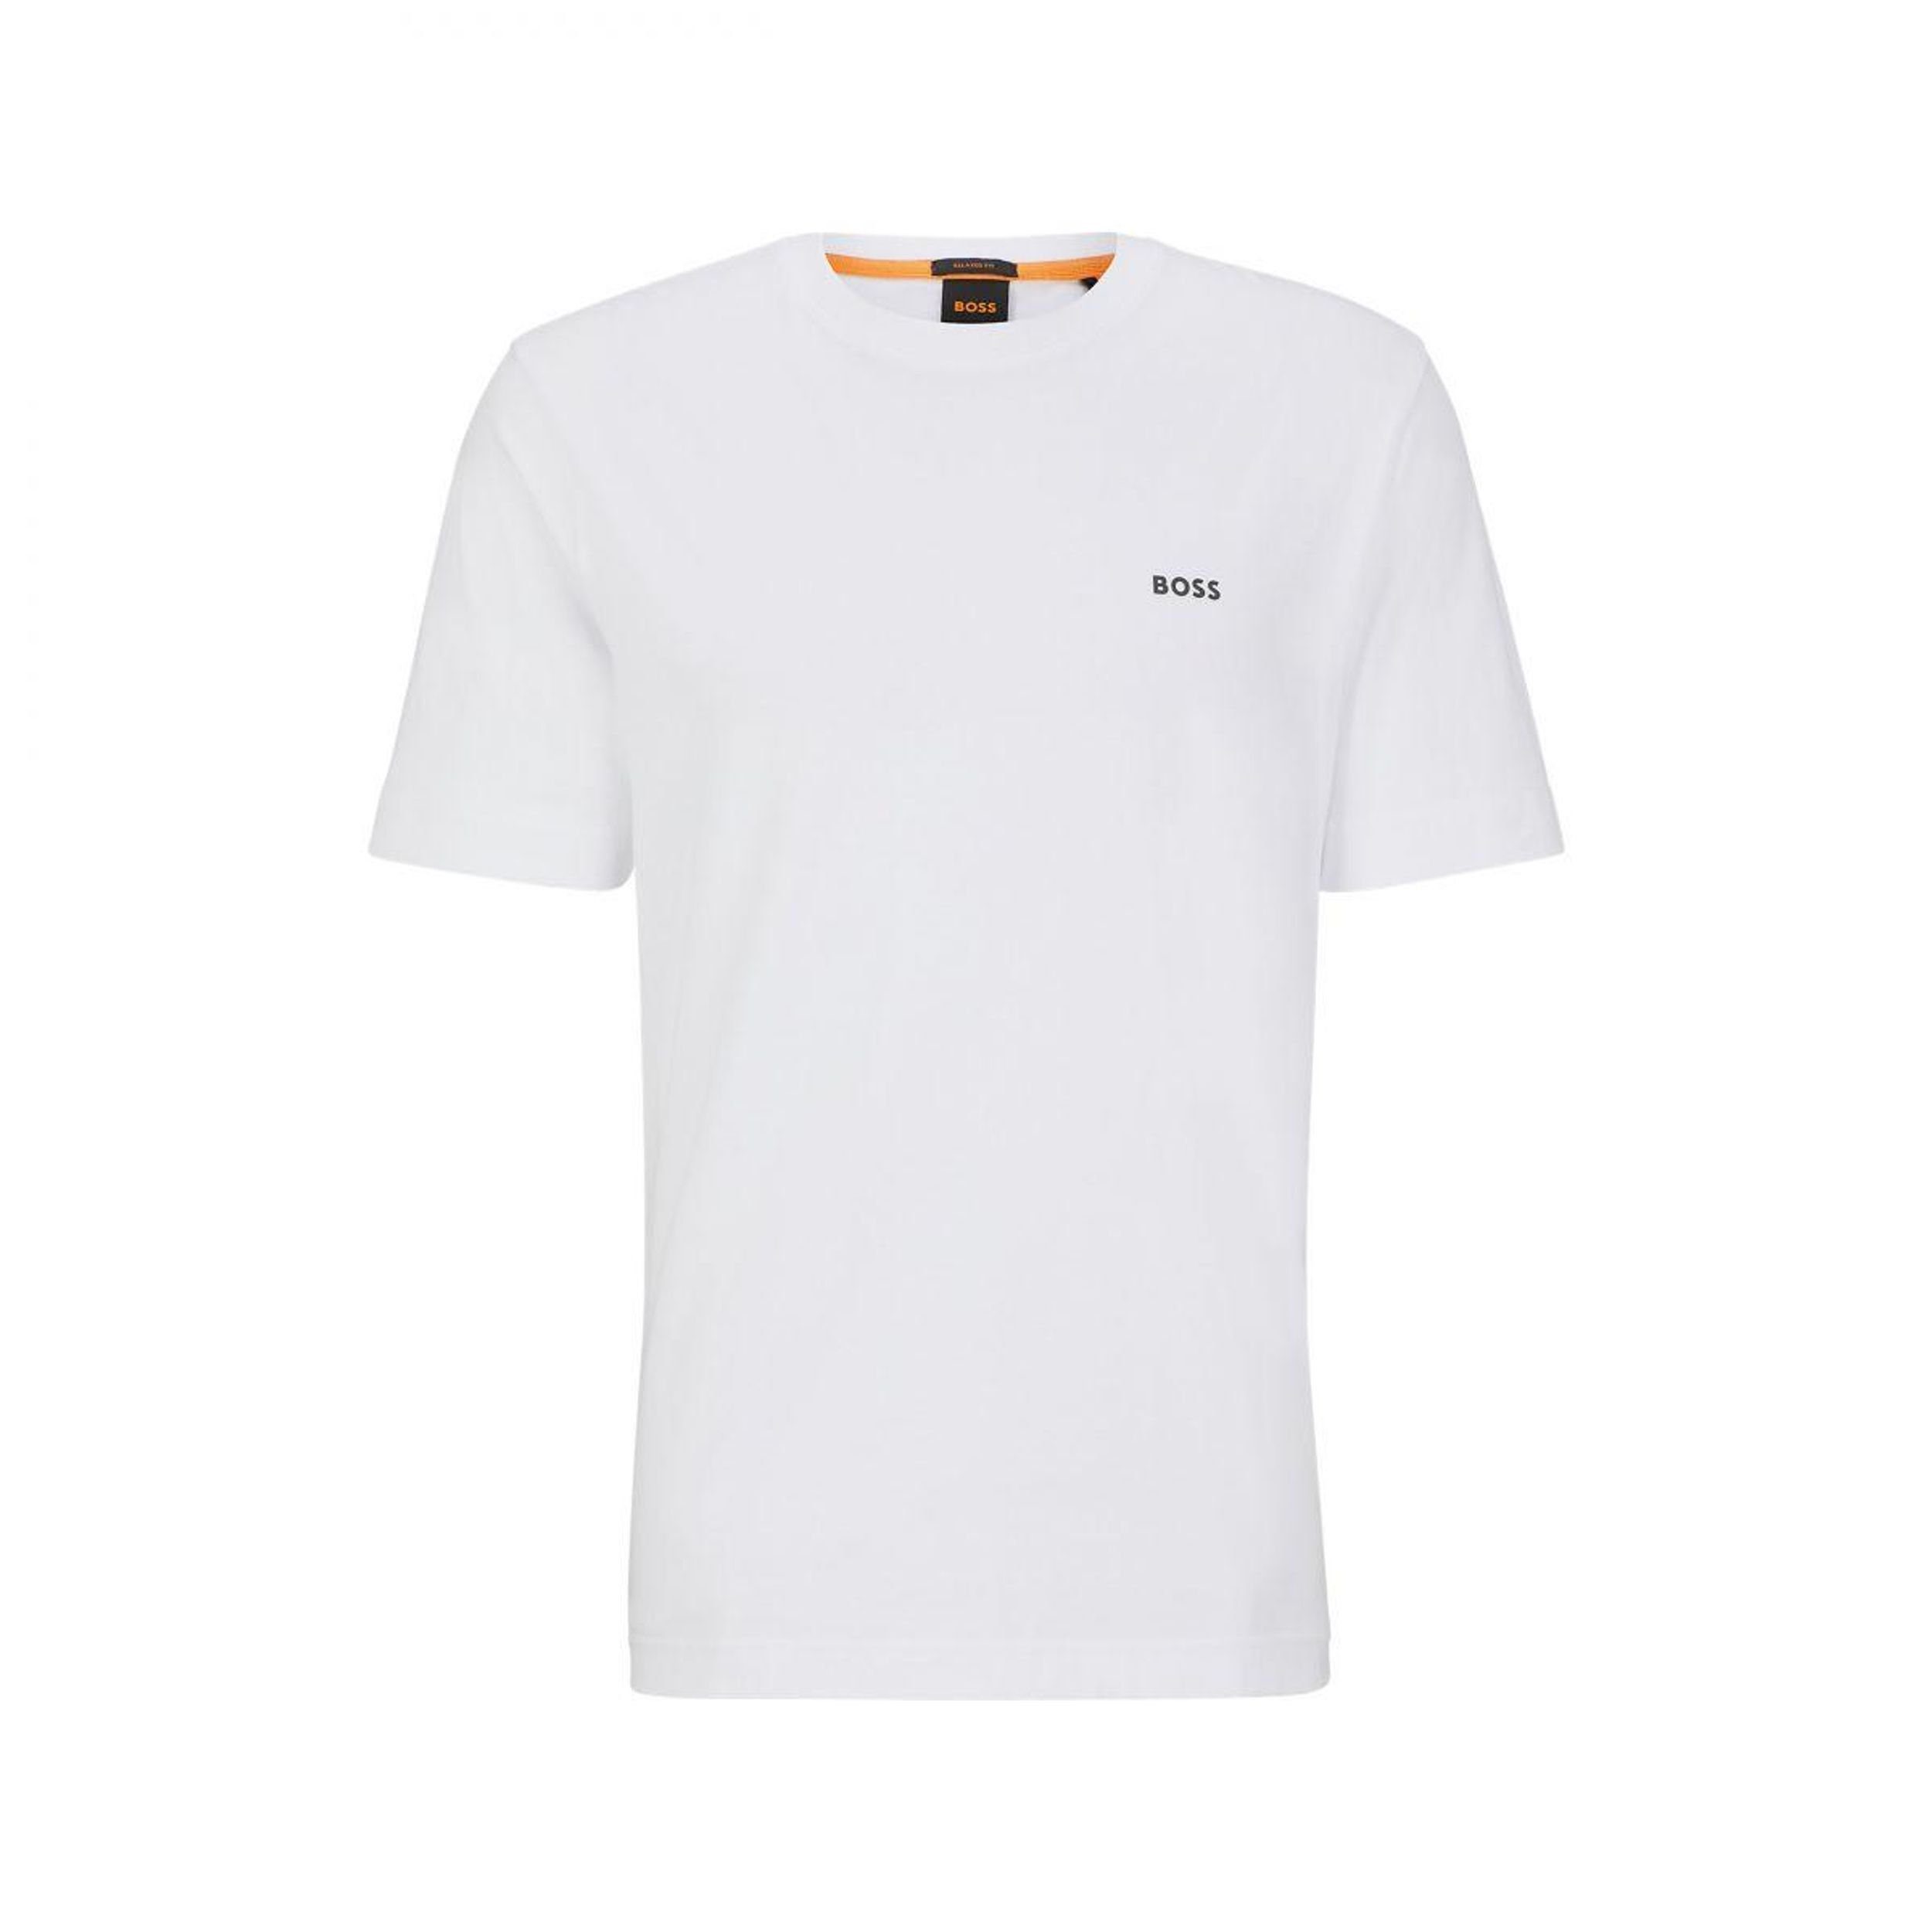 T-Shirt ORANGE Boss BOSS "TeeBossRacing" Orange white T-Shirt